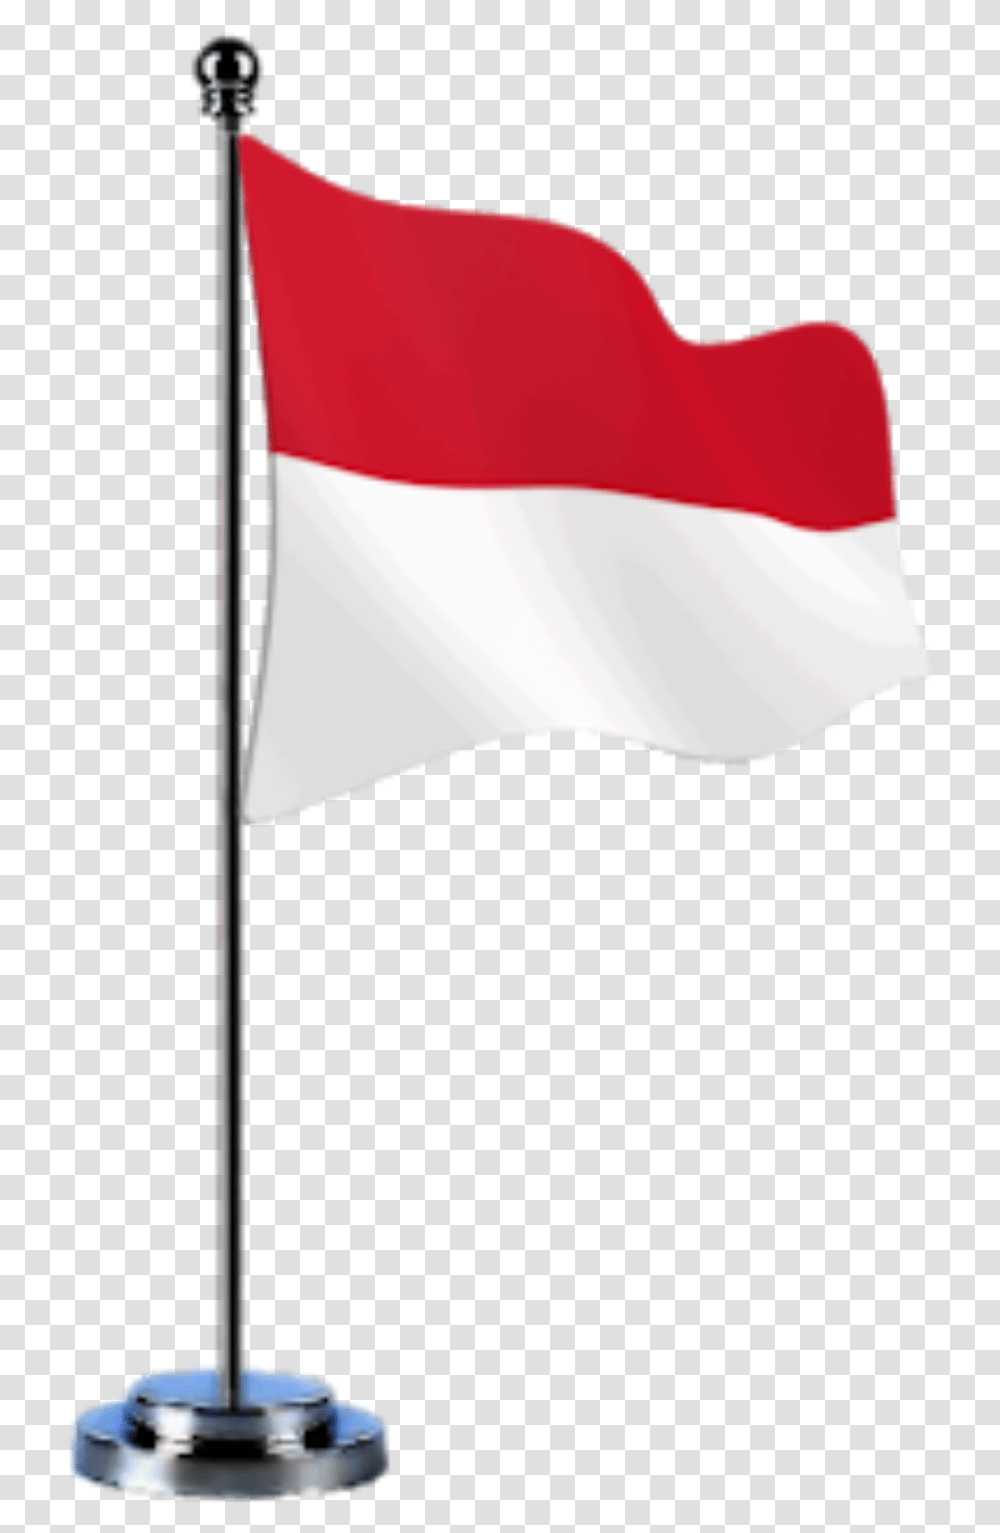 Bendera Merah Putih Vector Hd, Flag, Lamp, American Flag Transparent Png